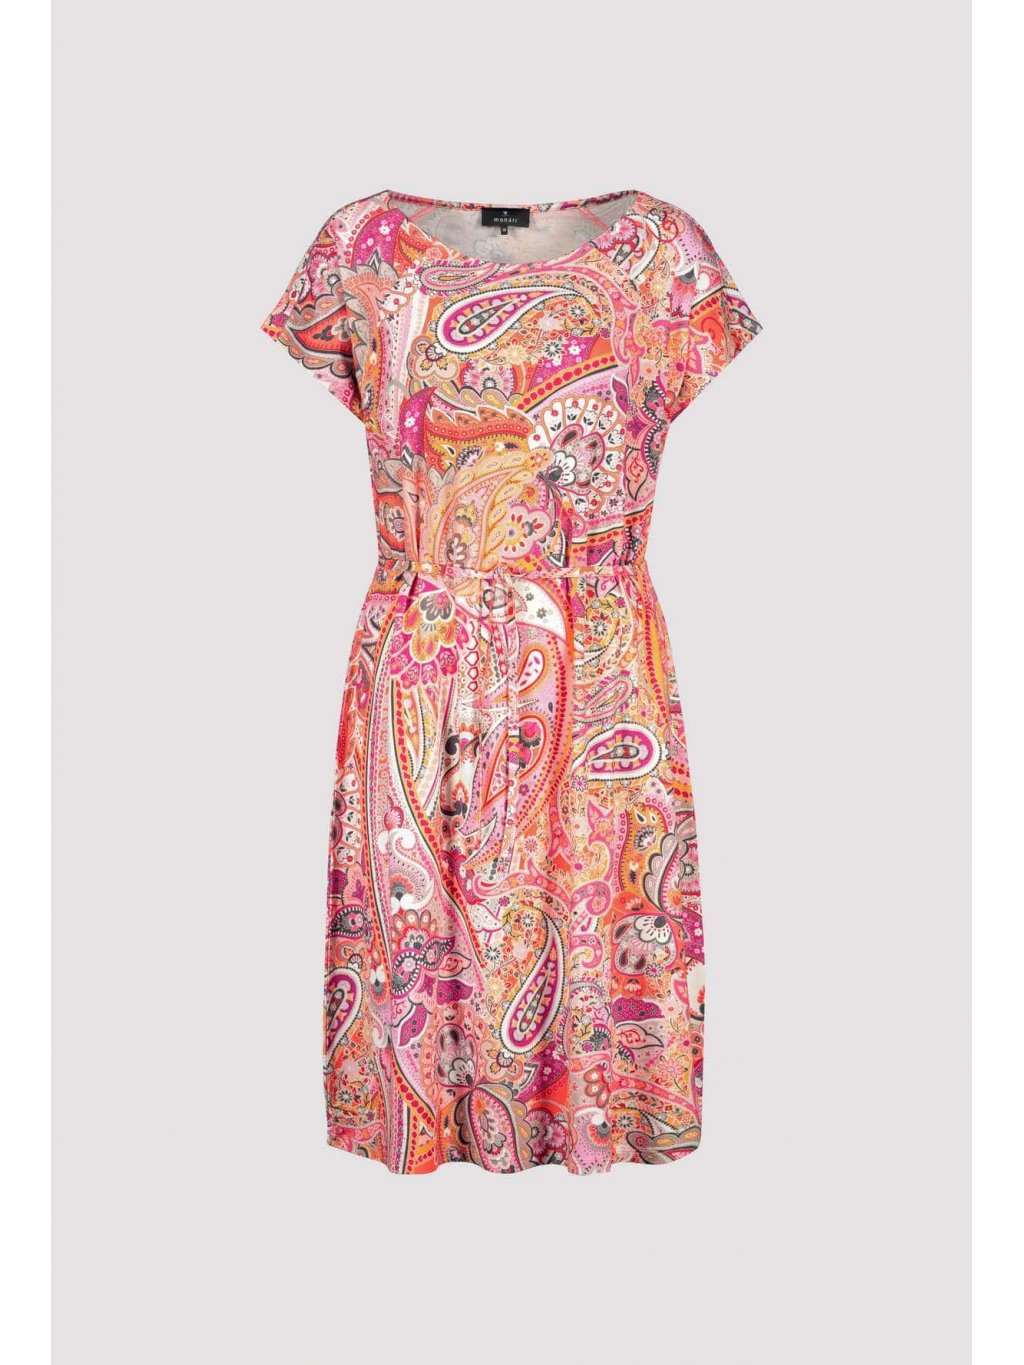 Šaty Monari 9012 lososovo růžové kašmírový vzor krátké